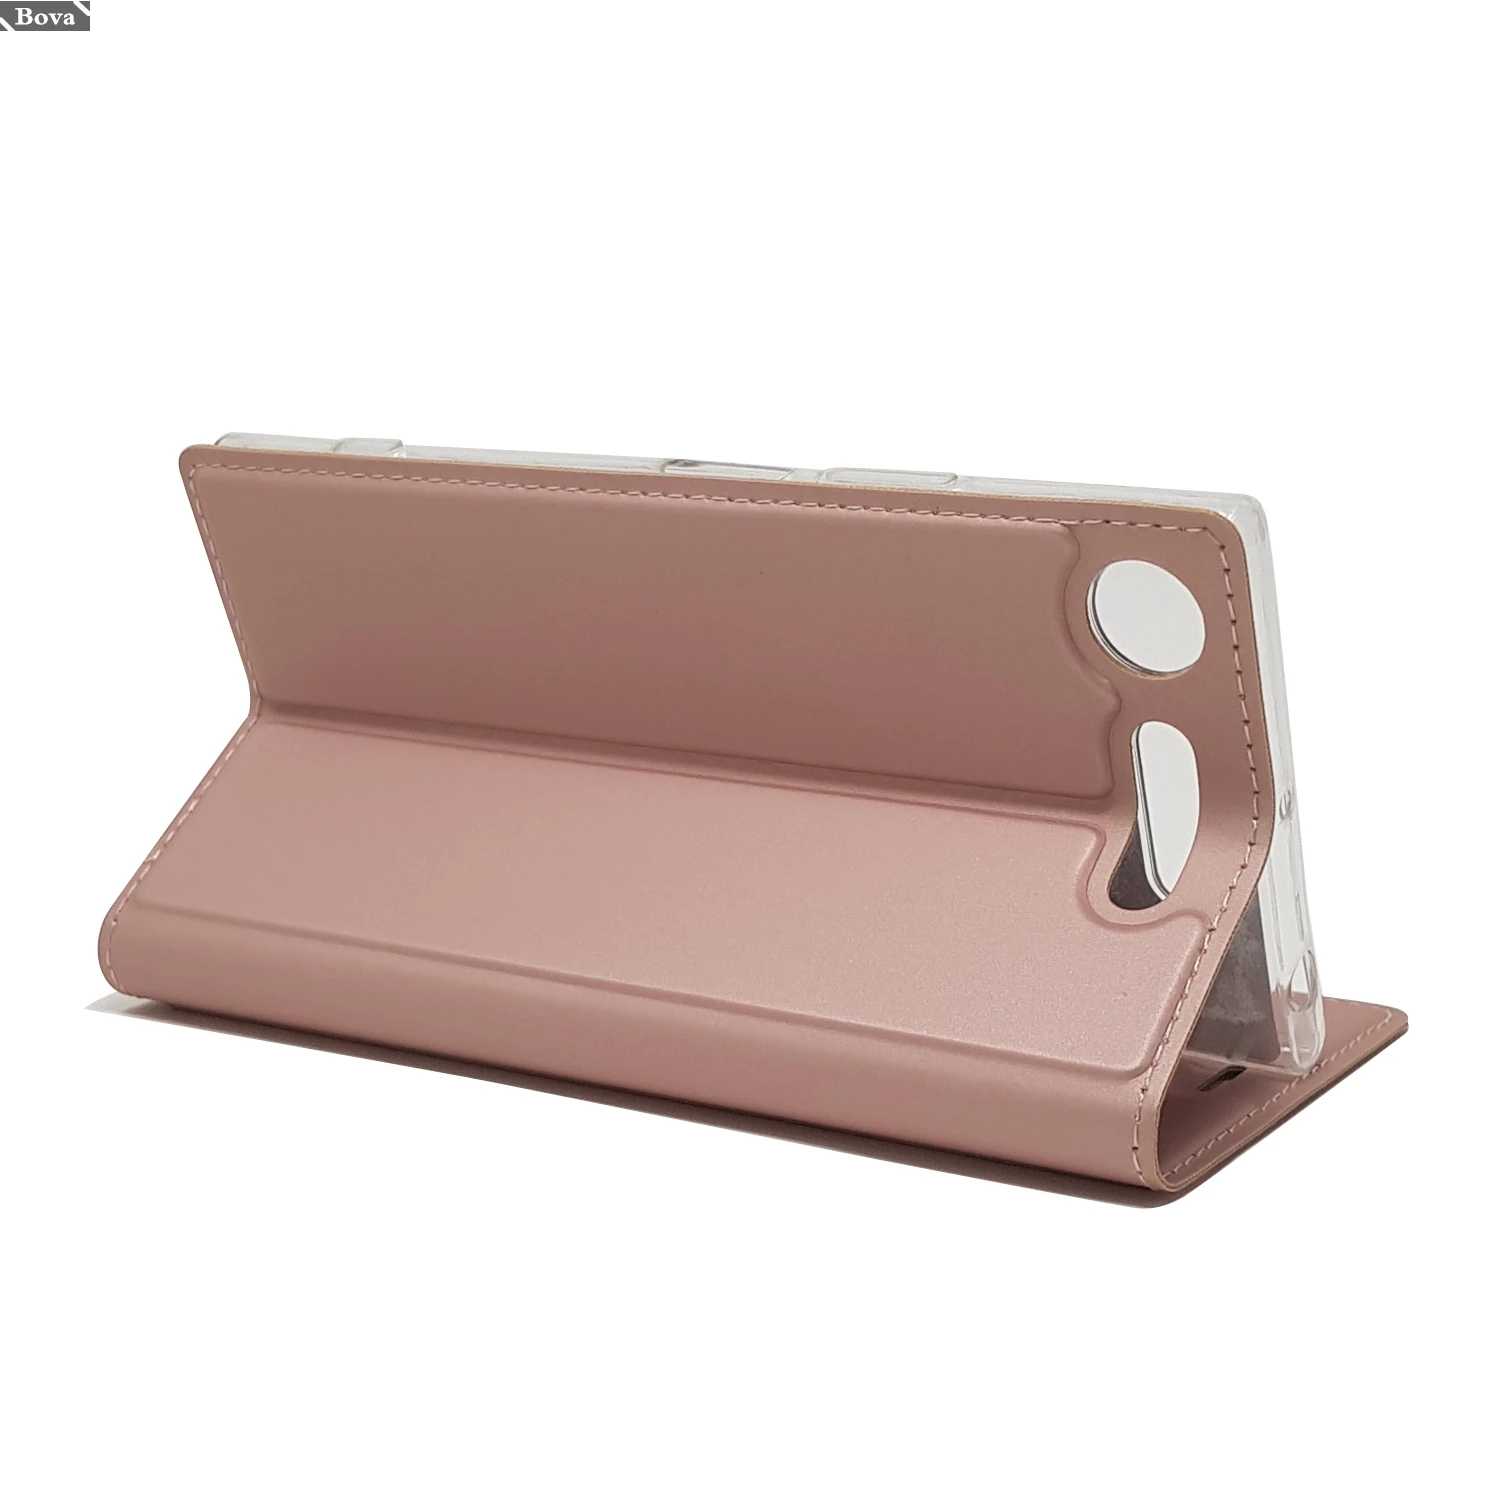 Матовый чехол-кошелек, флип-чехол для sony Xperia XZ1/XZ1, компактный Магнитный адсорбционный чехол для телефона, деловой стиль